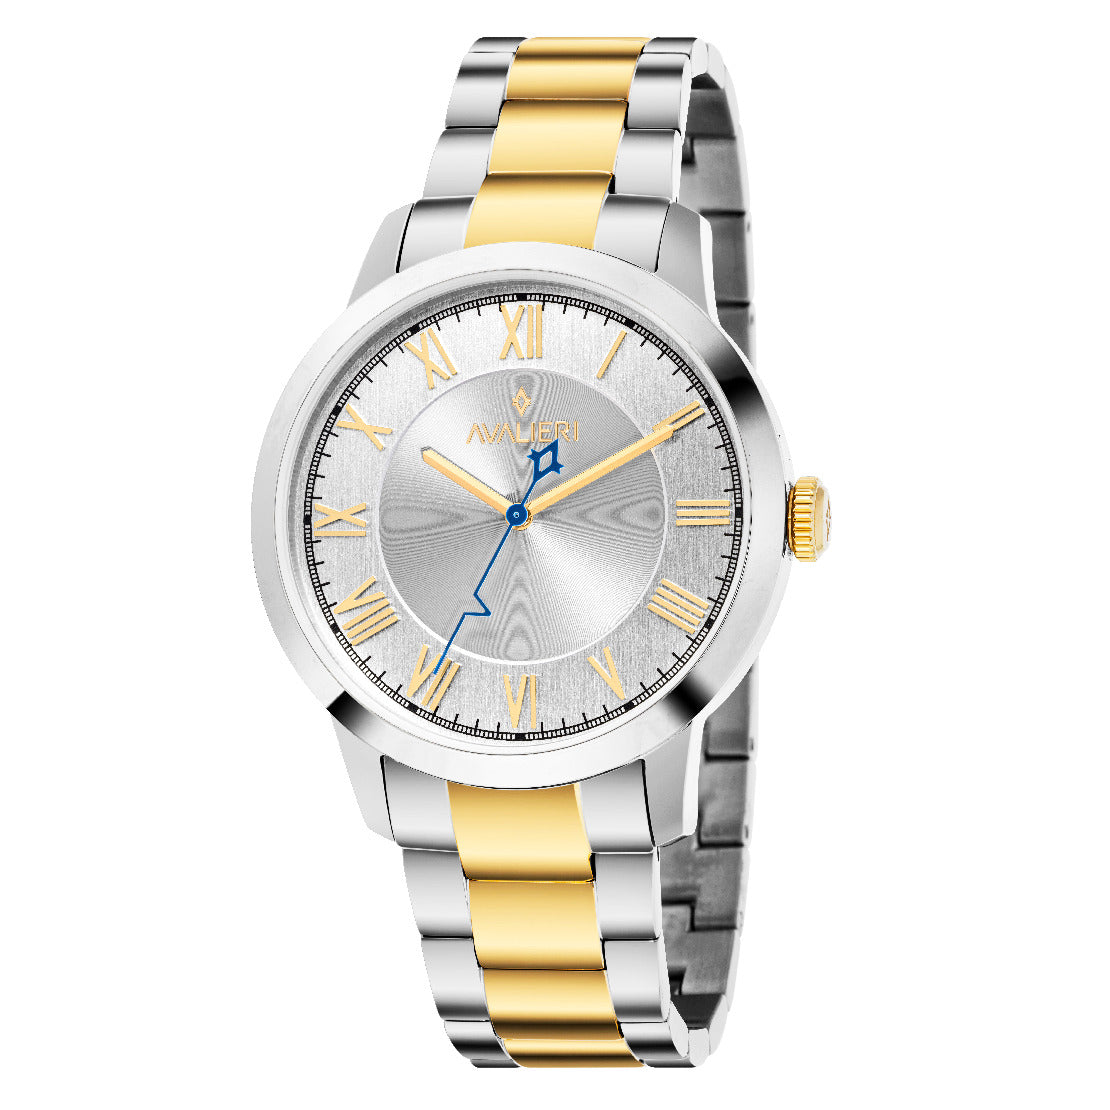 Avalieri Men's Quartz Watch, White Dial - AV-2551B